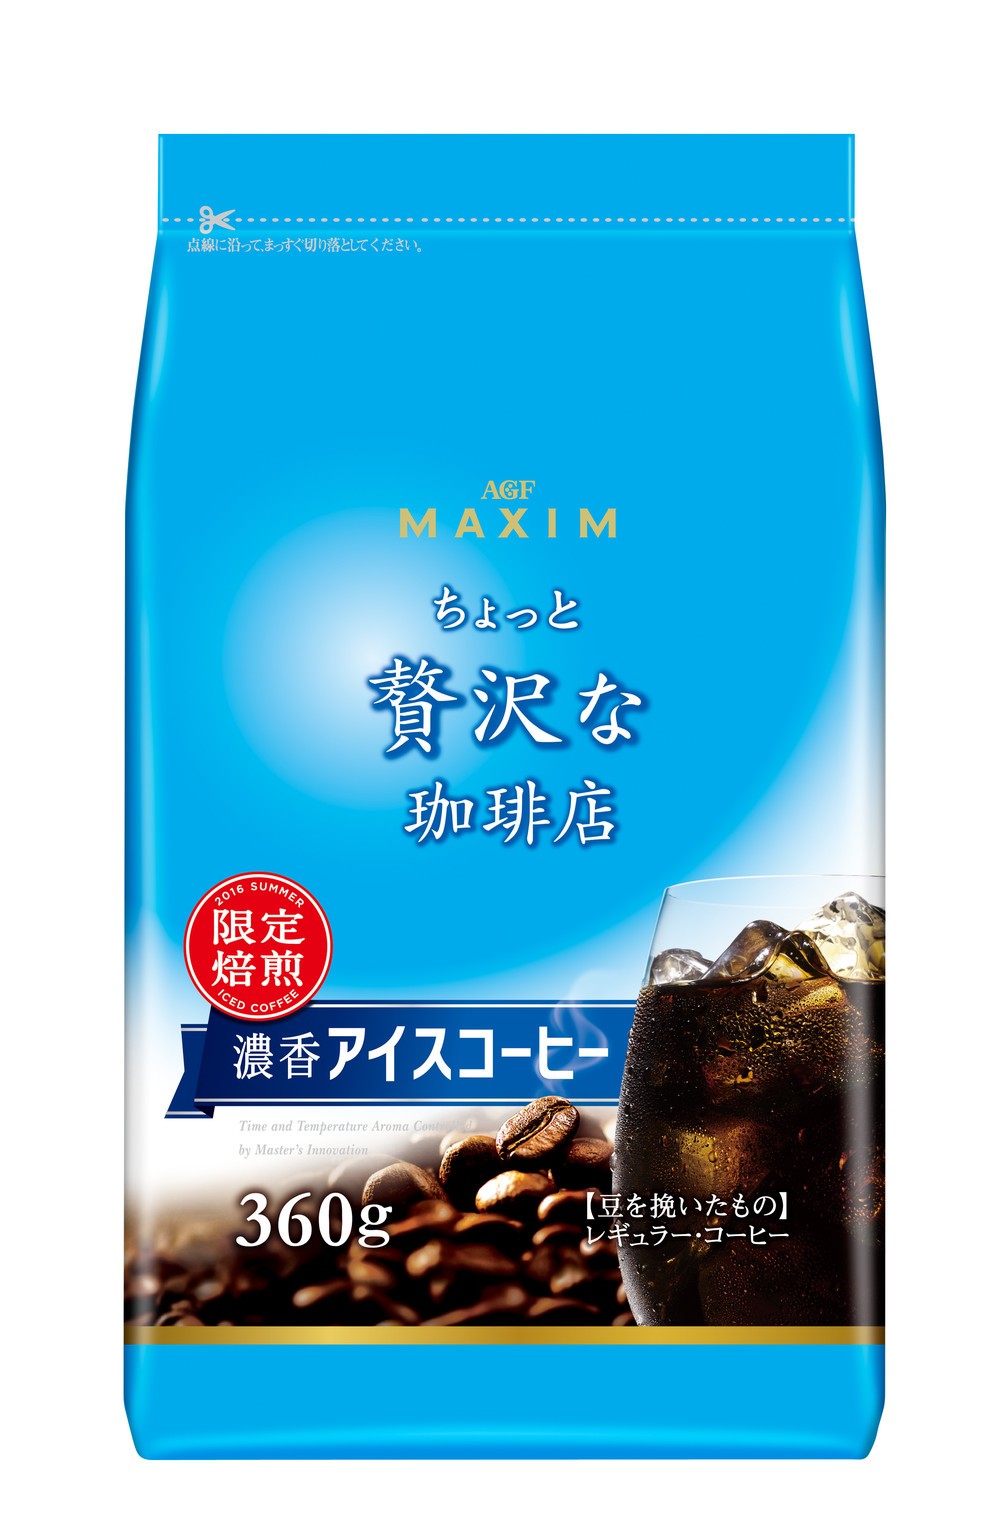 爽快な苦みと、濃香なコク　夏しか味わえない「マキシム」コーヒー新発売